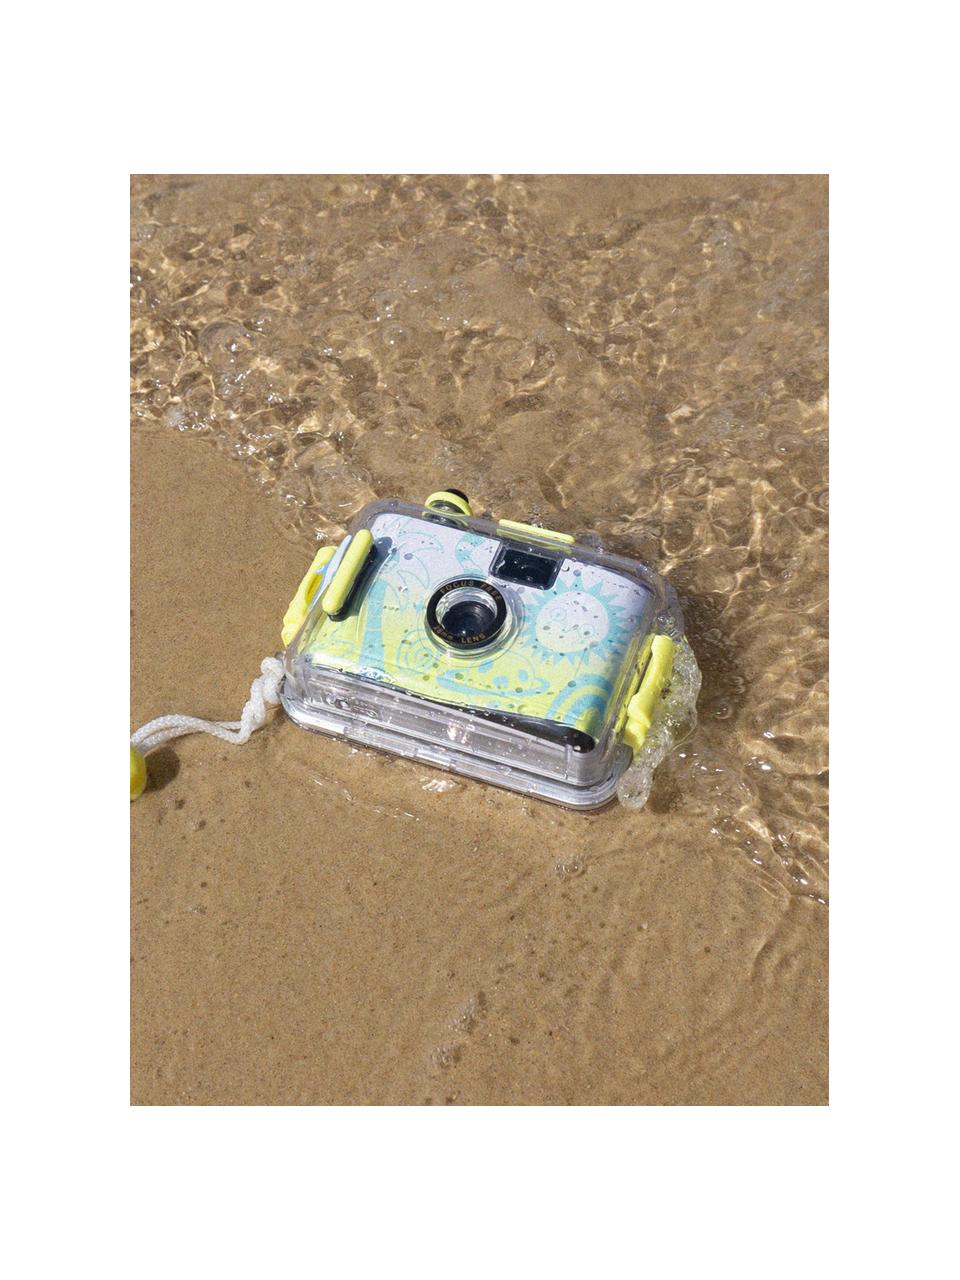 Podvodní fotoaparát s vodotěsným pouzdrem Sea Kids, ABS umělá hmota, Tlumeně bílá, tyrkysová zelená, světle žlutá, Š 15 cm, V 11 cm